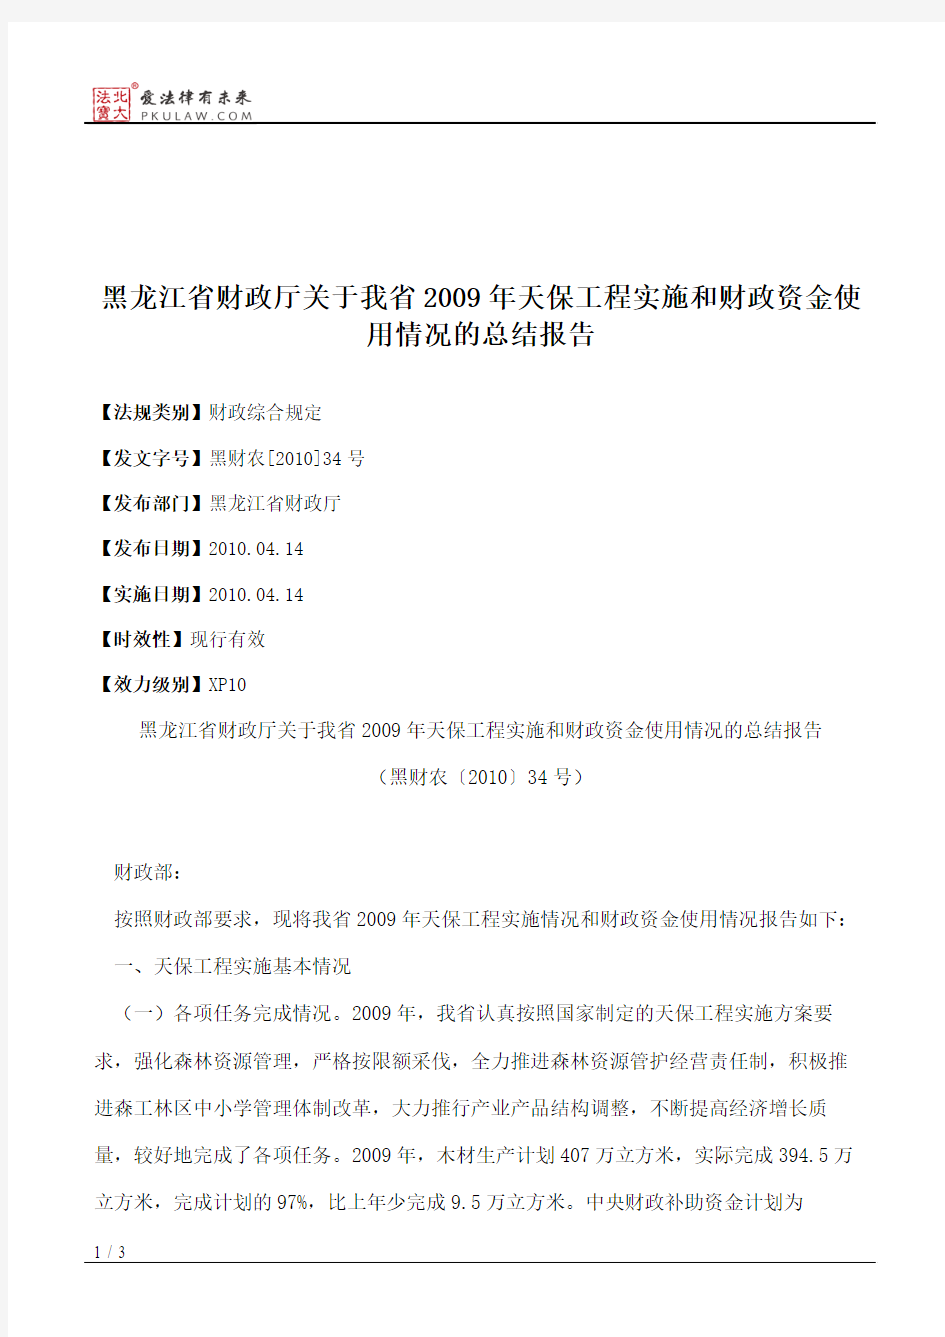 黑龙江省财政厅关于我省2009年天保工程实施和财政资金使用情况的总结报告